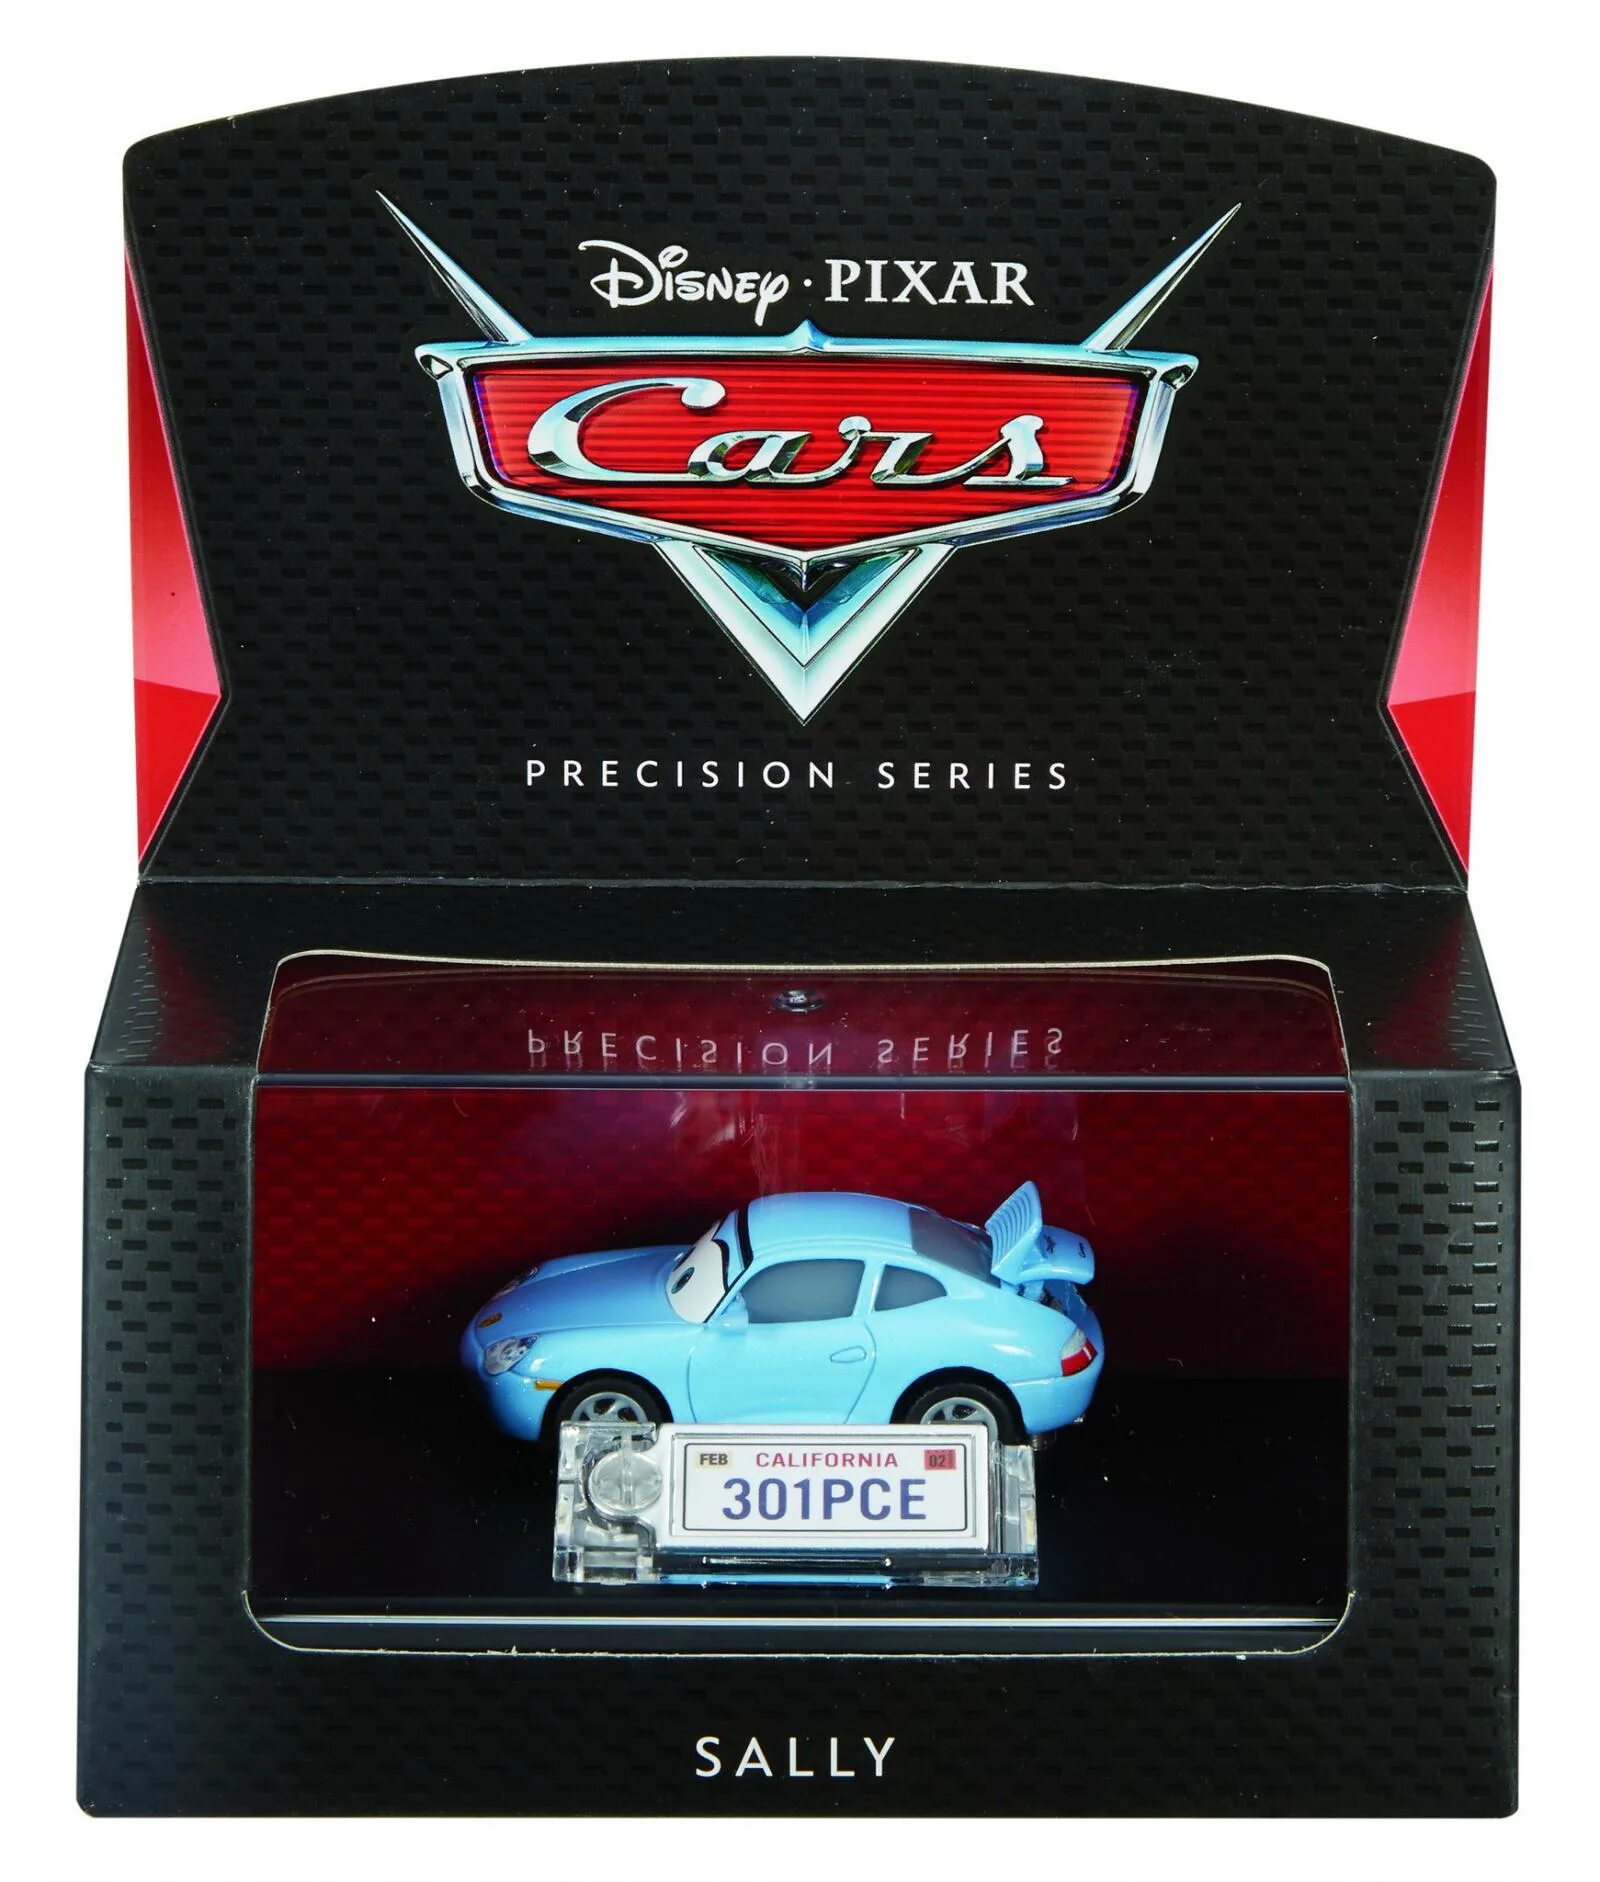 Мини тачки. Precision Series cars Disney Pixar Mattel. Гоночная машина Mattel Тачки модель коллекционная Салли (dhd60/dvv43) 1:55 6.5 см. Коллекция машинок Тачки. Тачки 1 коллекционные машинки.